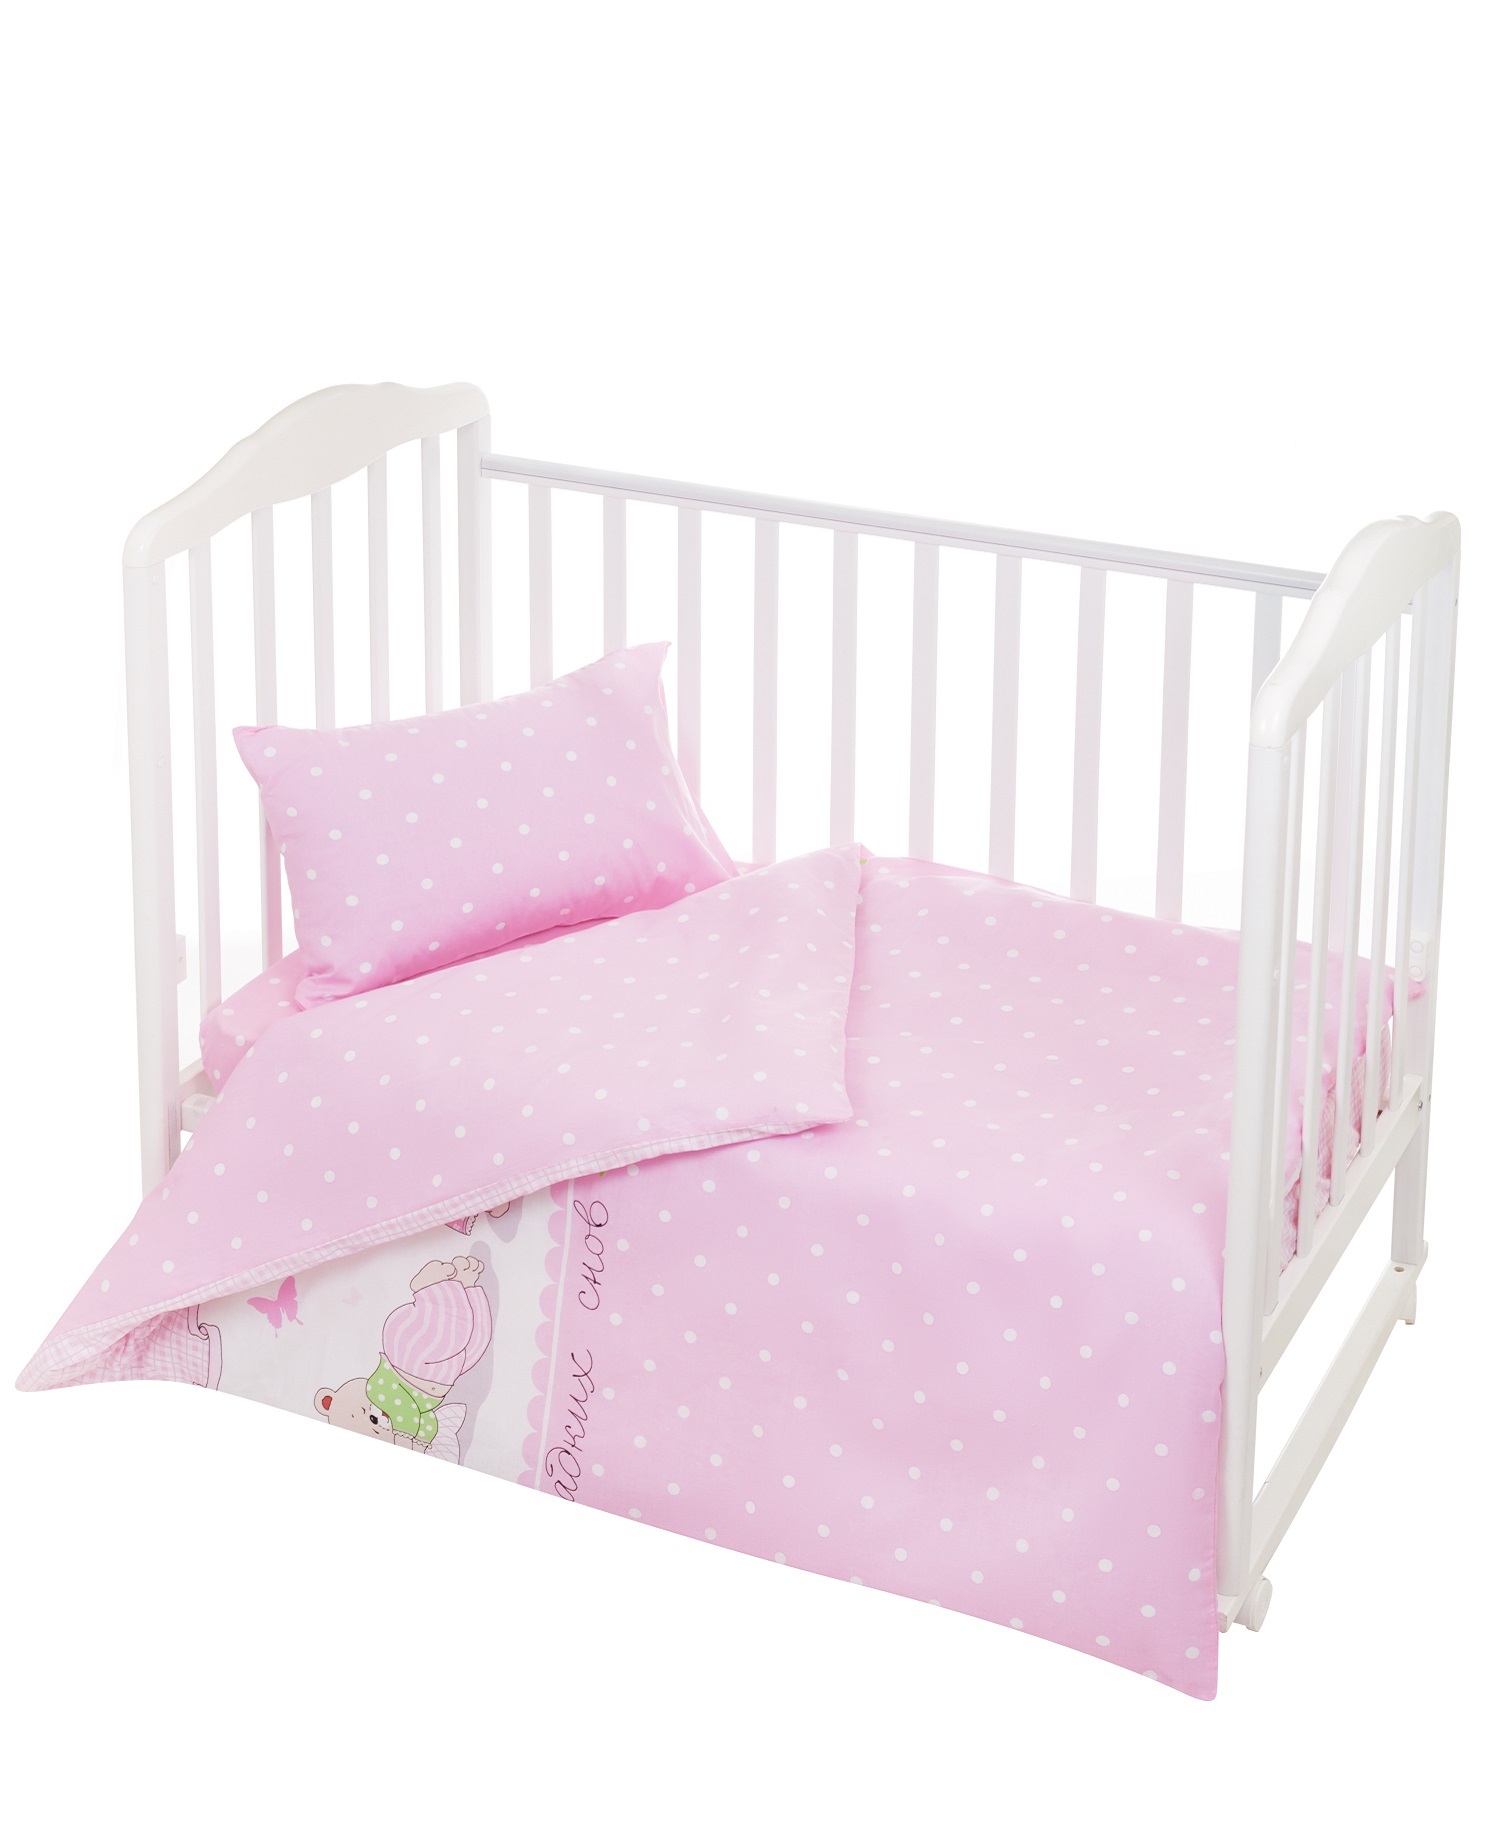 Комплект постельного белья Lemony kids розовый в горошек 3 предмета - фото 1